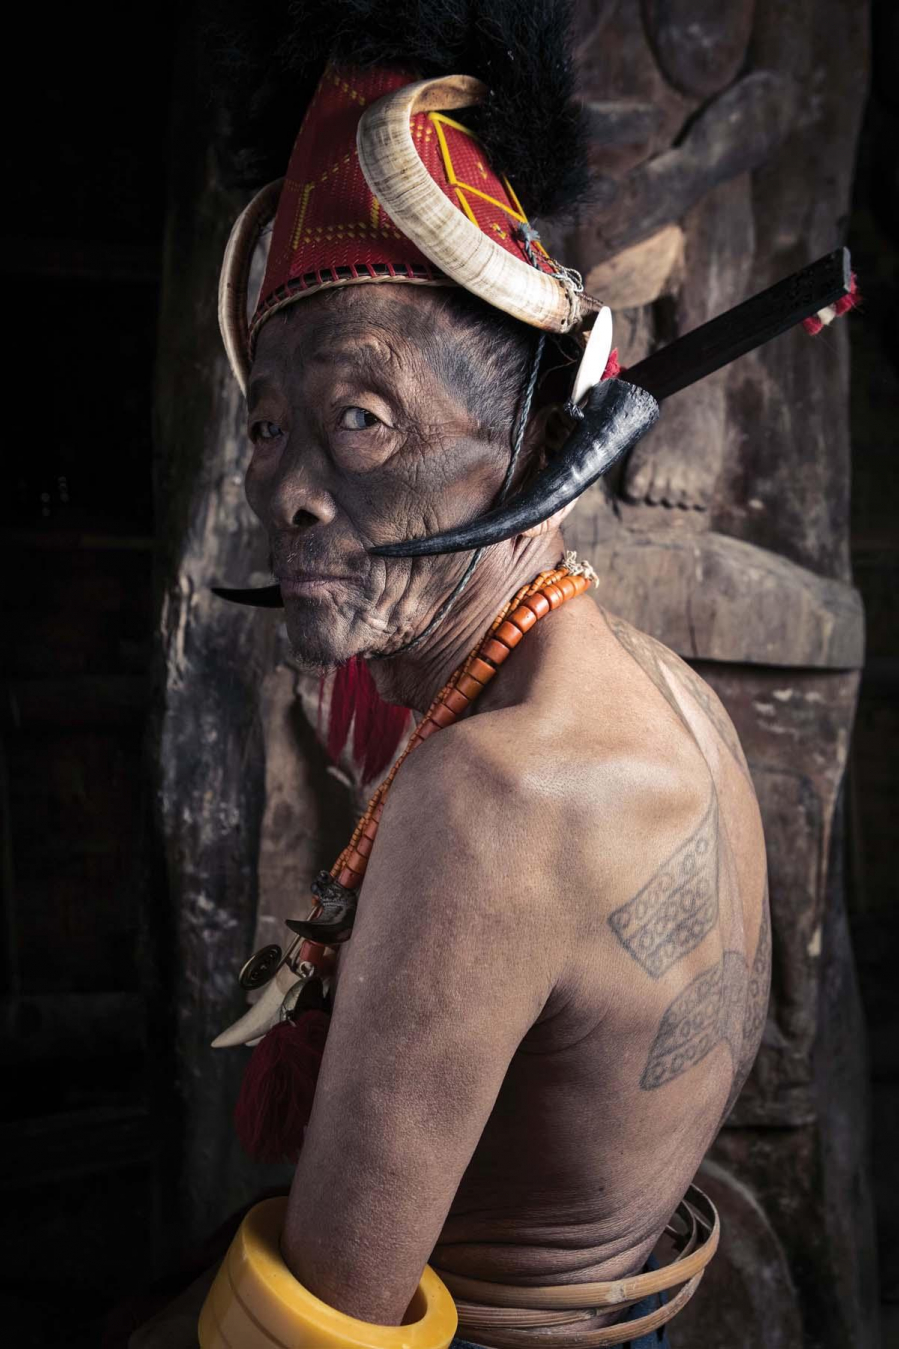 The Ang hay còn gọi là trưởng làng Wenyu với hình xăm lưng hổ. Chỉ những người mạnh mẽ mới có được một hình xăm hổ.